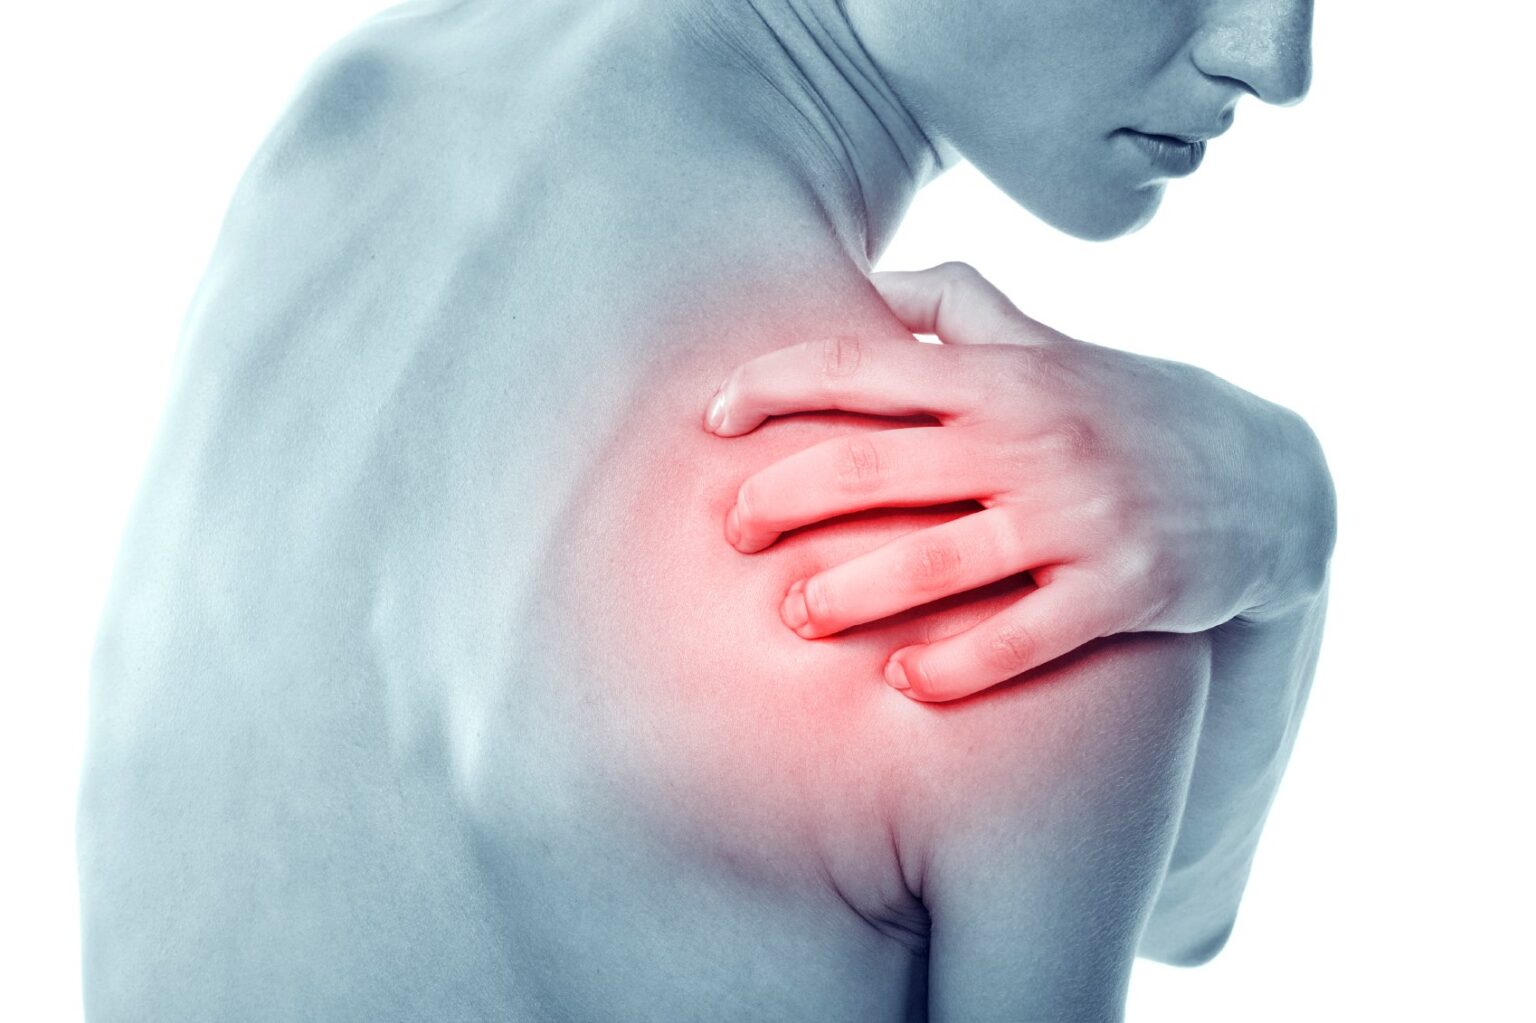 Shoulder Pain Relief & Treatment Options